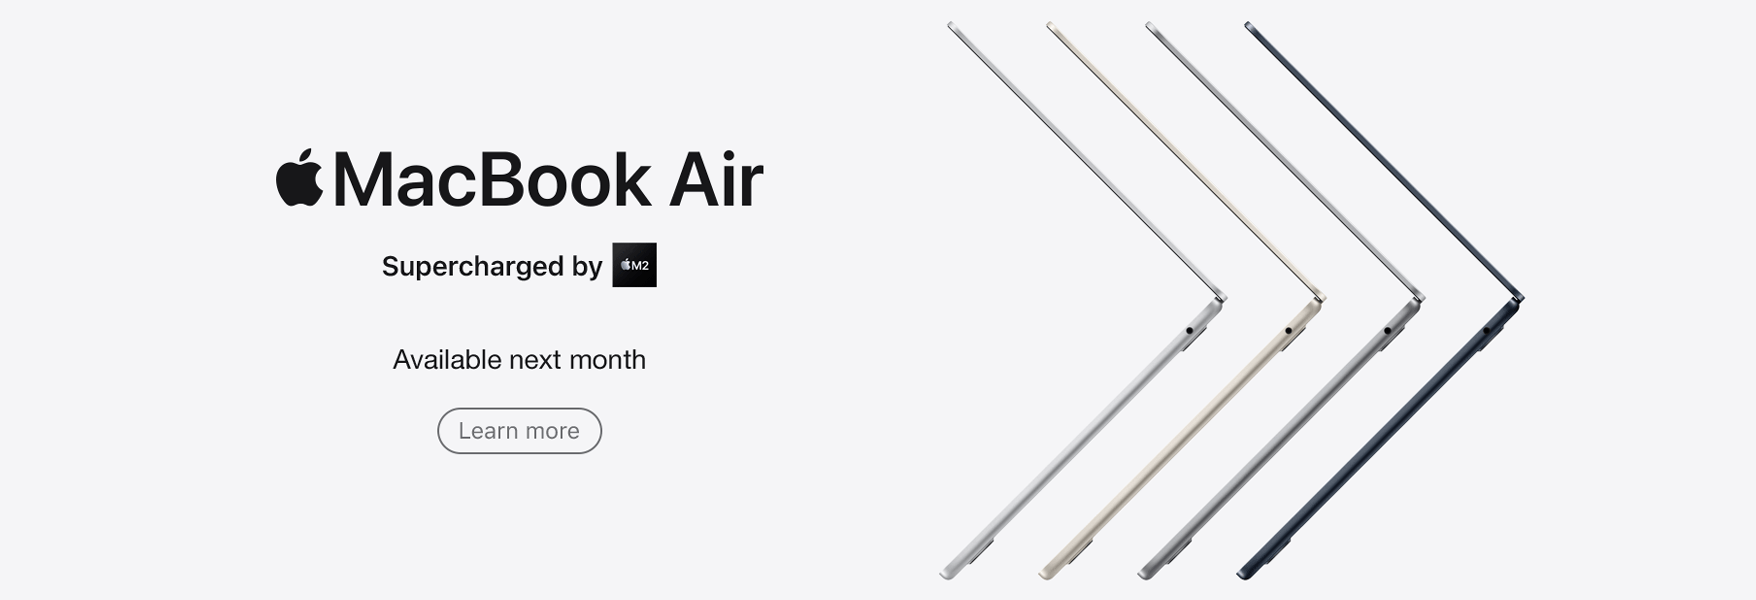 MacBook Air Coming Soon